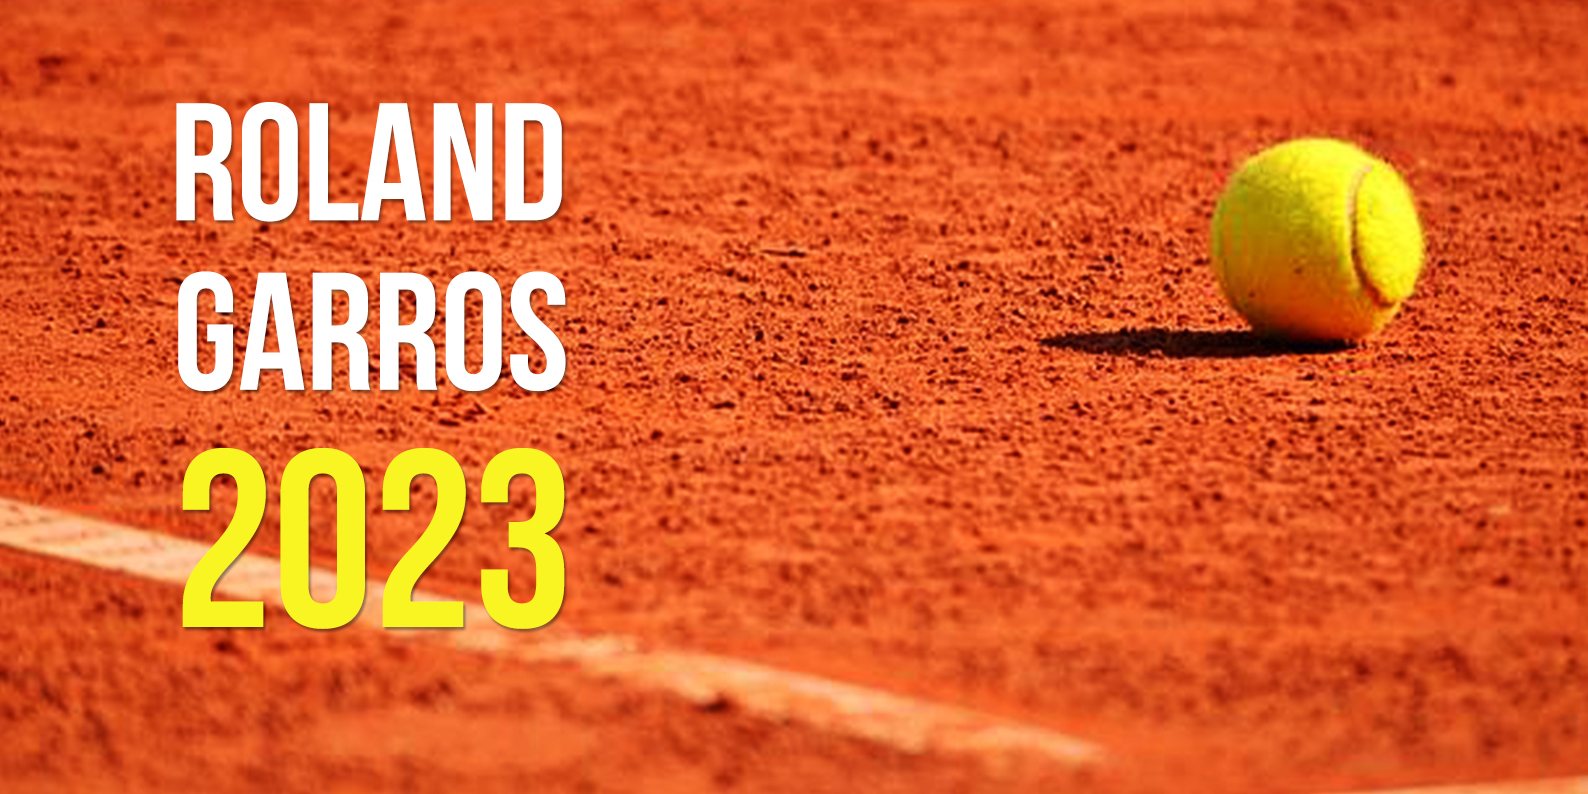 Roland-Garros, du 28 mai au 11 juin 2023